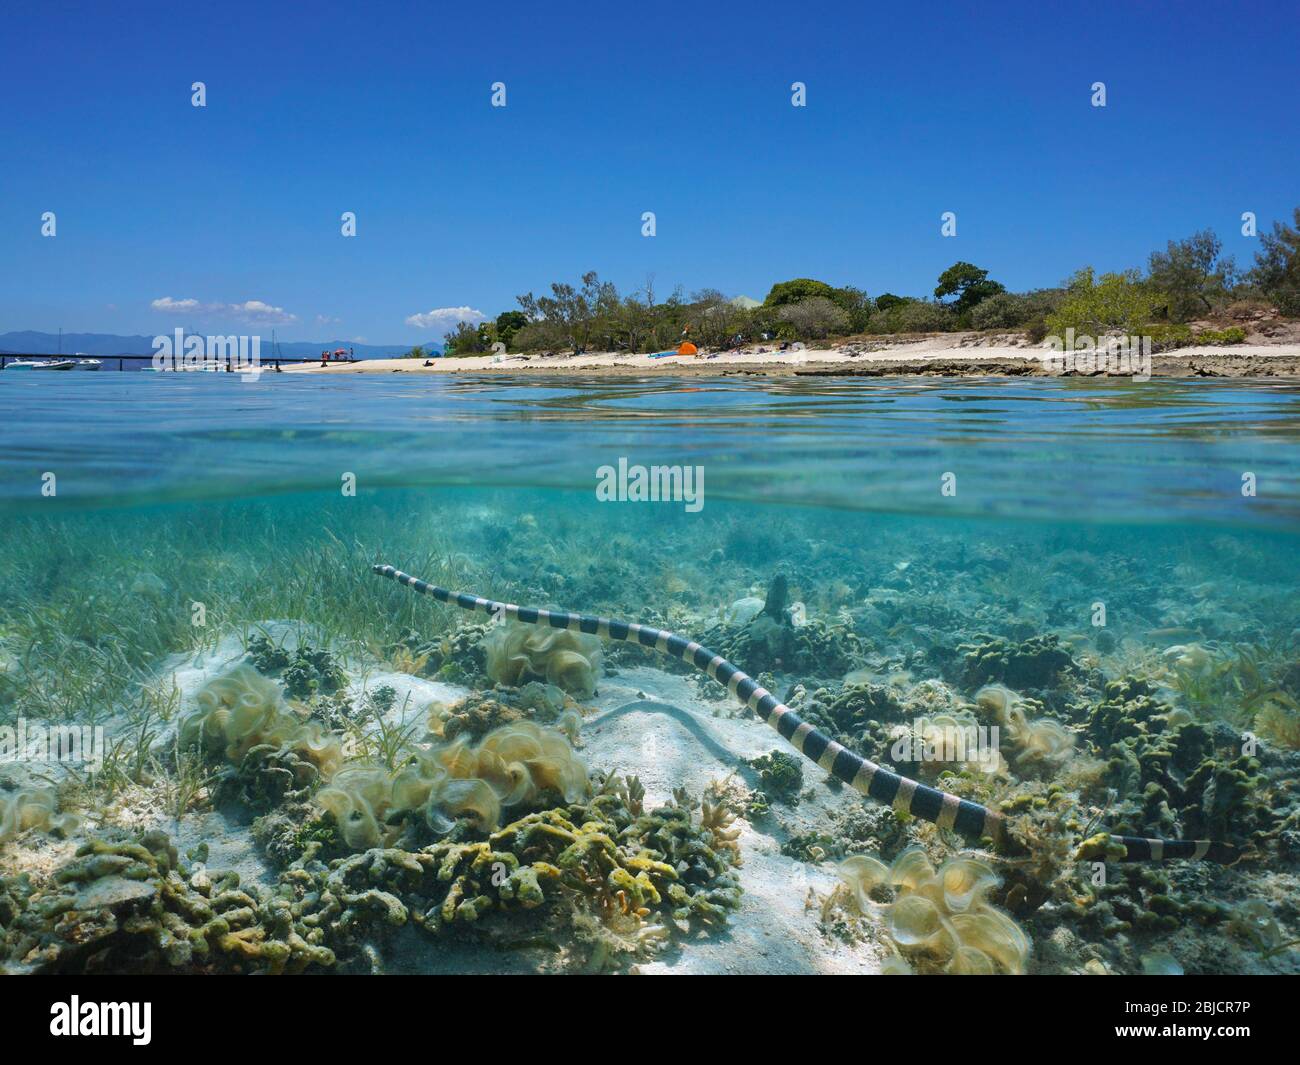 Una serpiente krait de mar de color amarillo bajo el agua cerca de la costa de la isla Signal, vista dividida bajo la superficie del agua, Nueva Caledonia, océano Pacífico sur Foto de stock